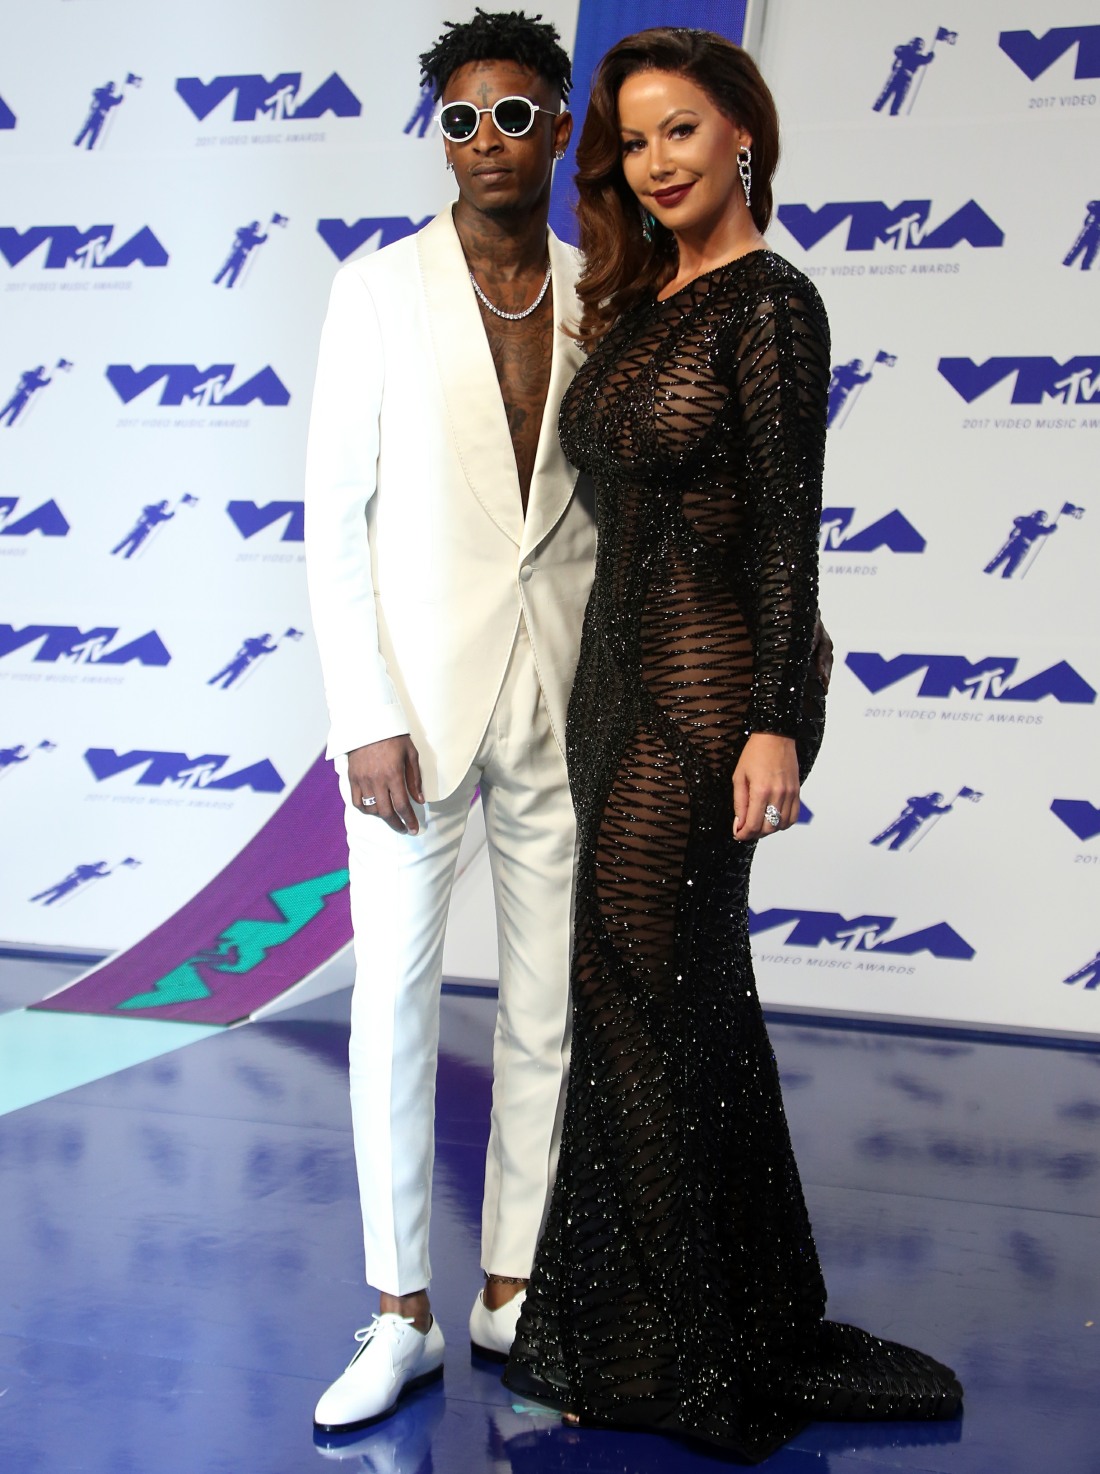 Эмбер Роуз посетила VMA с париком и ее парнем 21 Savage